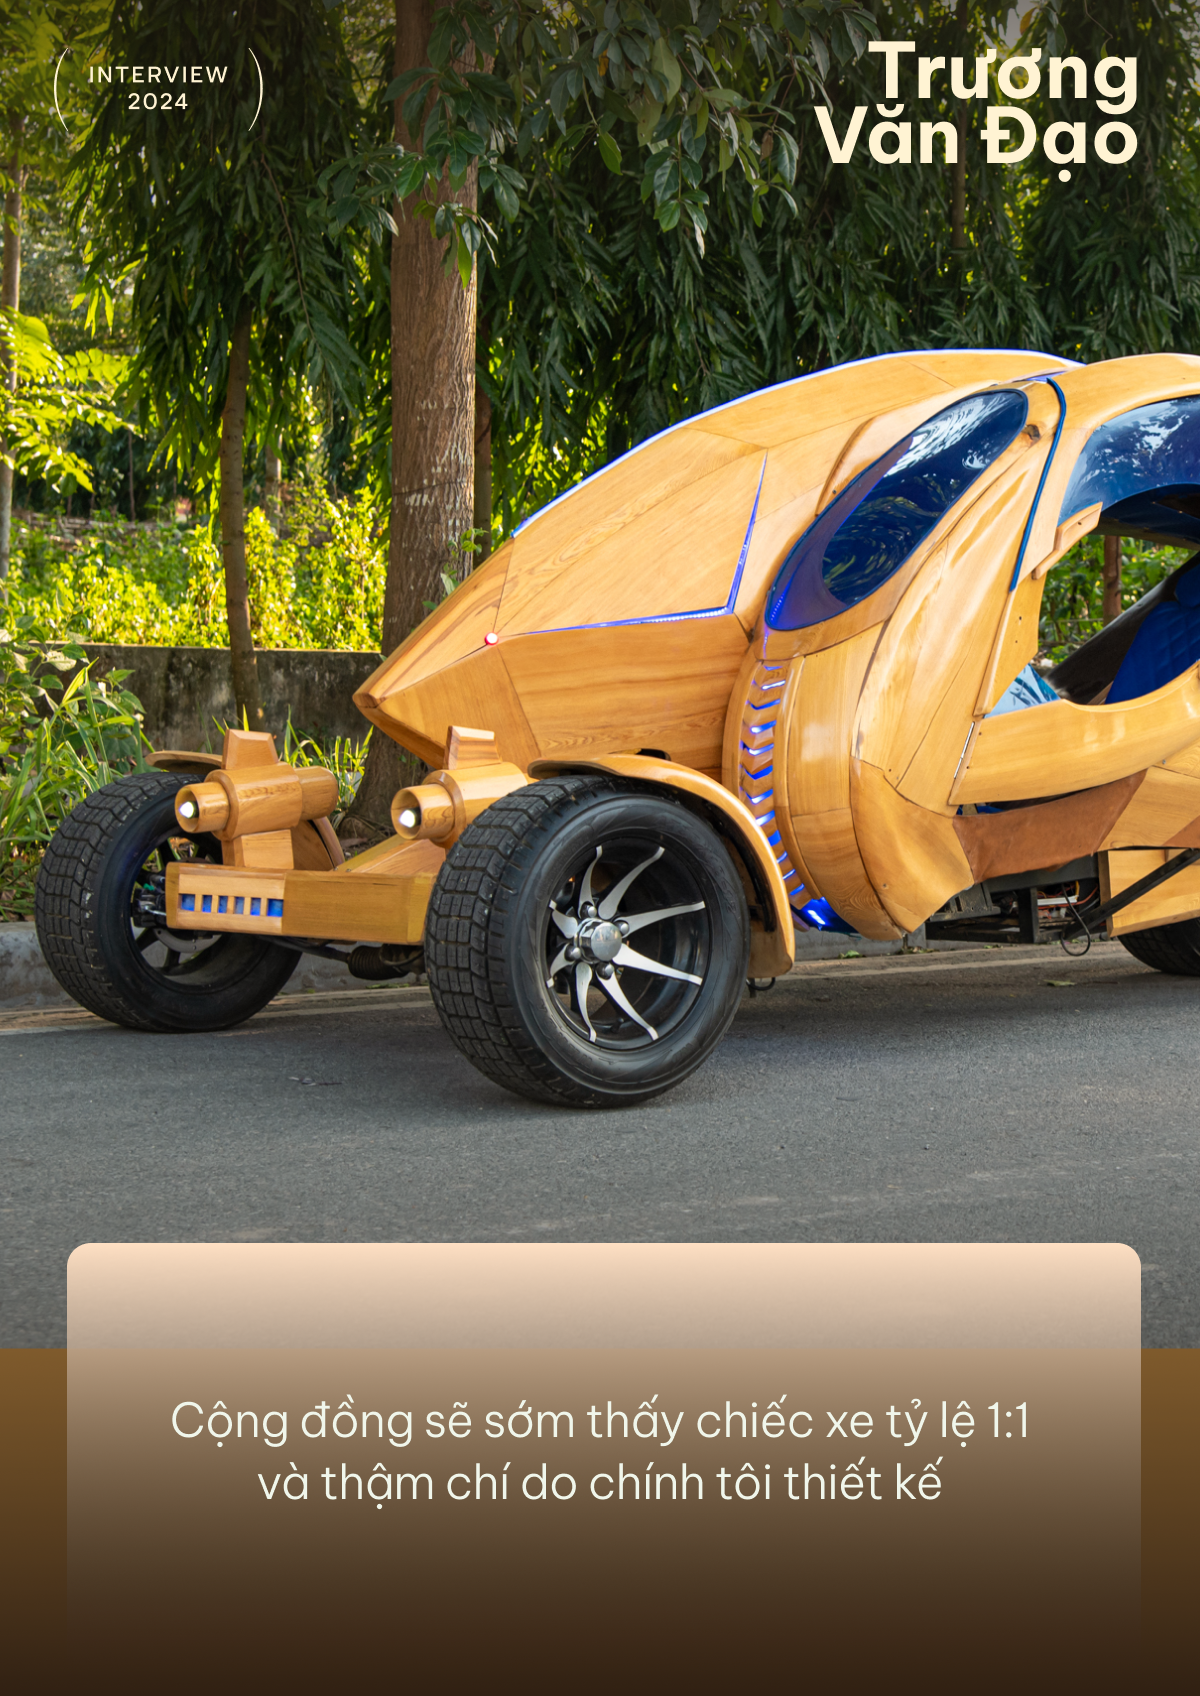 Ông bố làm xe gỗ Trương Văn Đạo: ‘Sắp tự thiết kế xe, dùng cả AI’ - Ảnh 7.